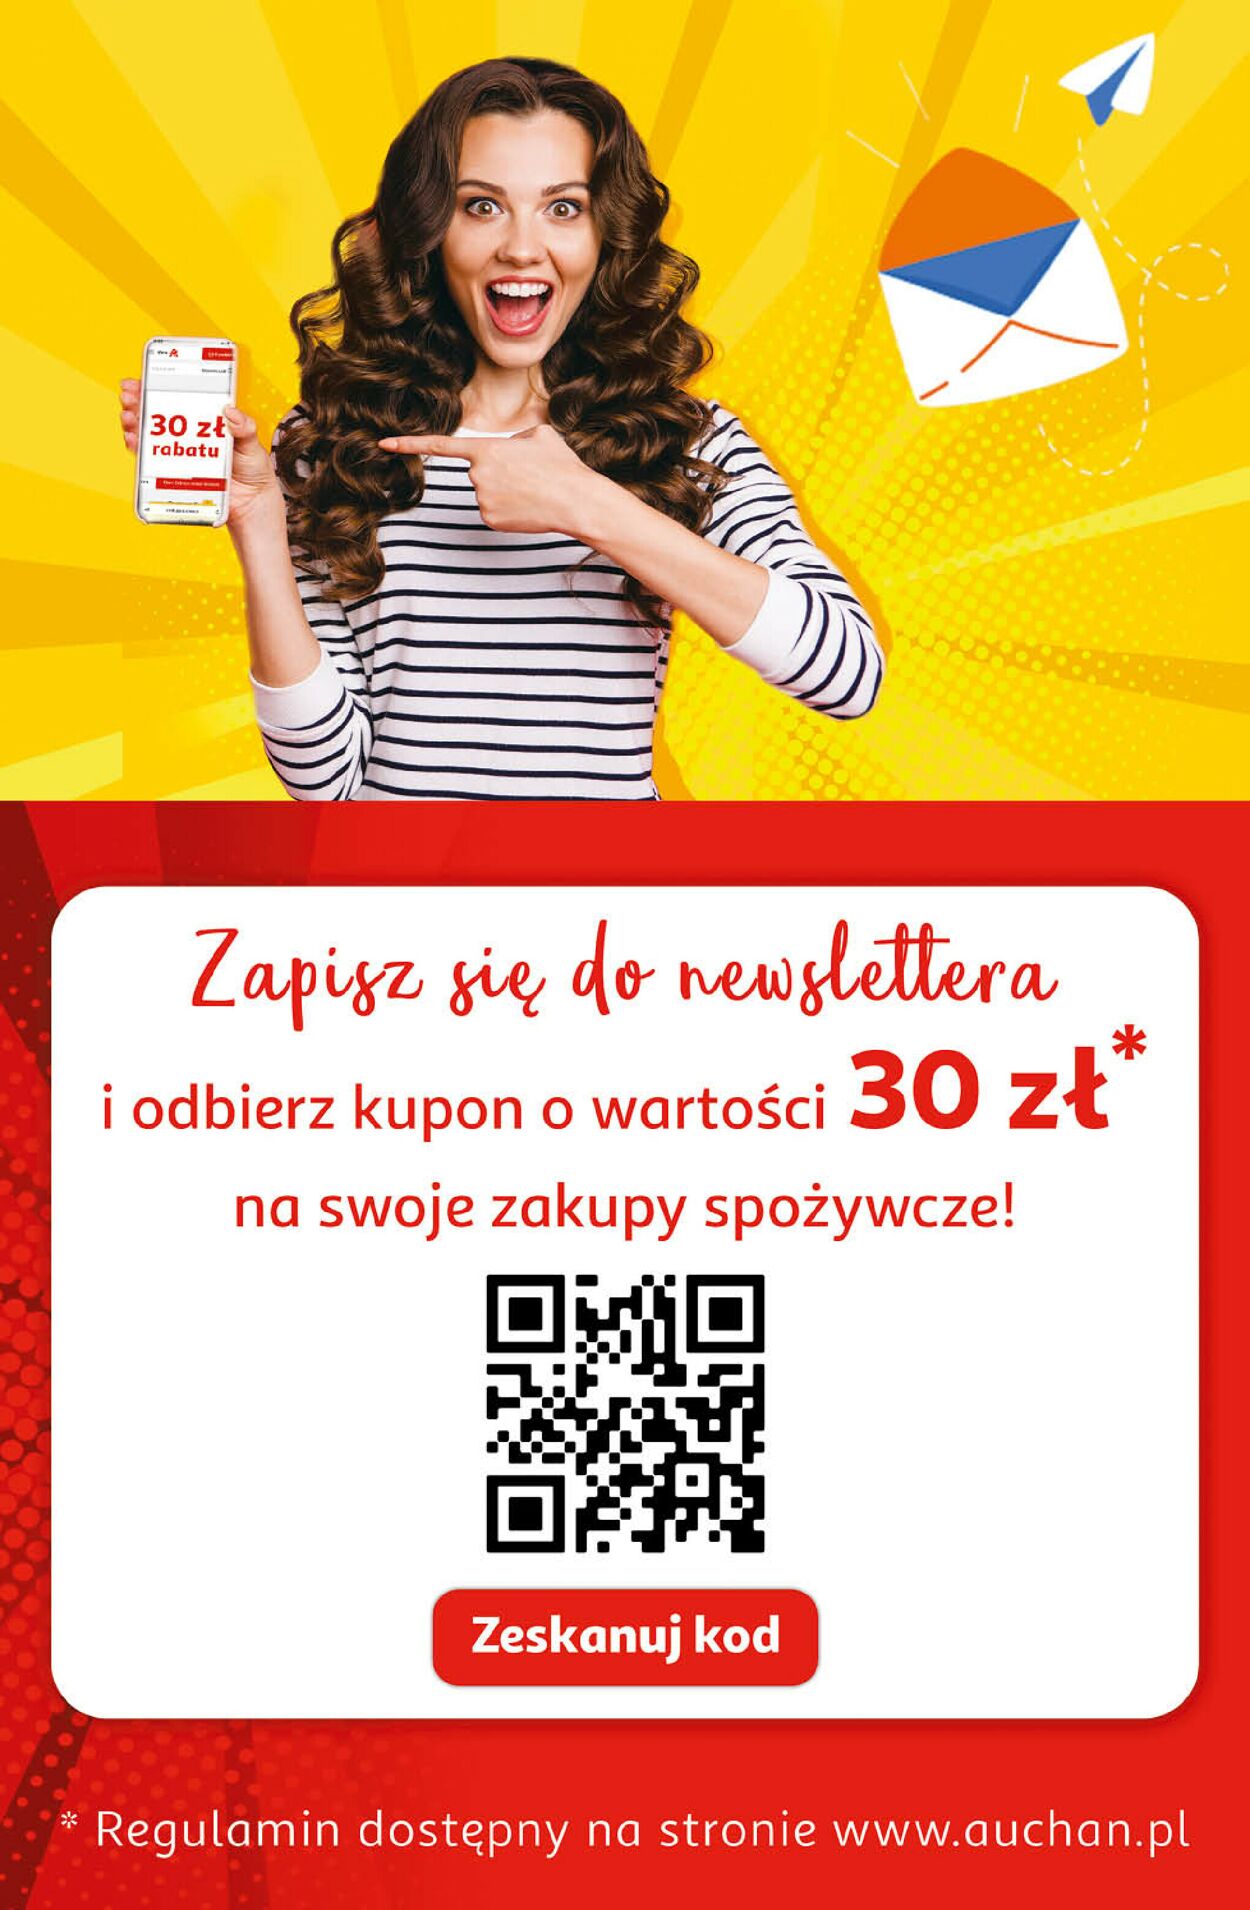 Auchan Gazetka od 01.06.2023